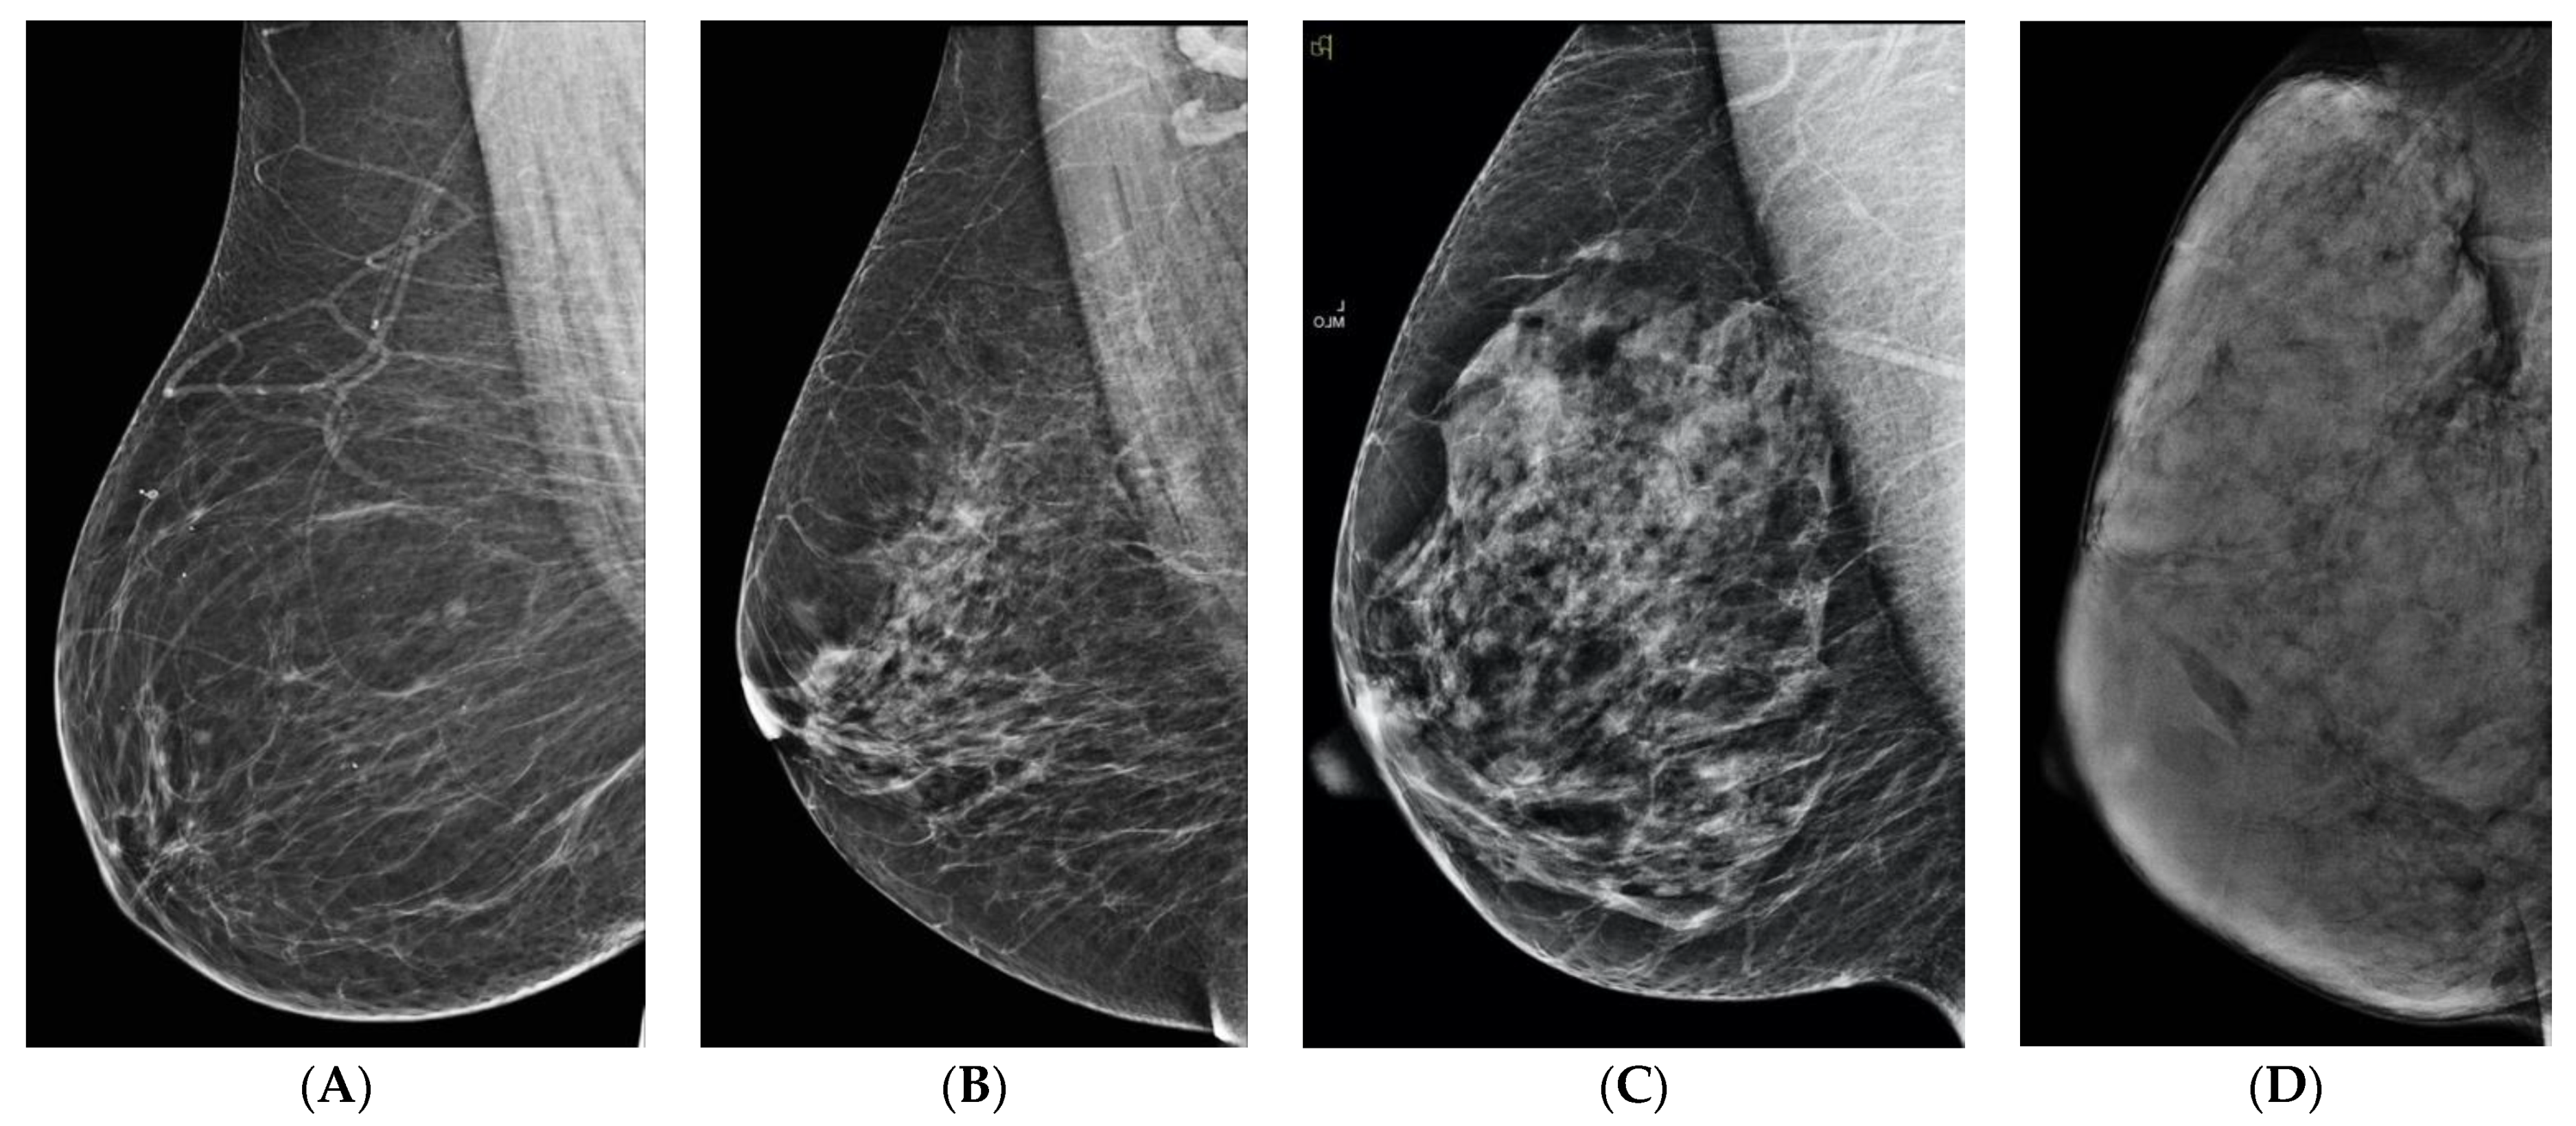 Dense Breasts: Các bạn có biết rằng vú đặc gấp 4 lần khả năng phát hiện ung thư vú so với vú bình thường? Hãy xem hình ảnh này để hiểu rõ hơn về vú đặc và tại sao đây là một chủ đề quan trọng trong chăm sóc sức khoẻ phụ nữ.